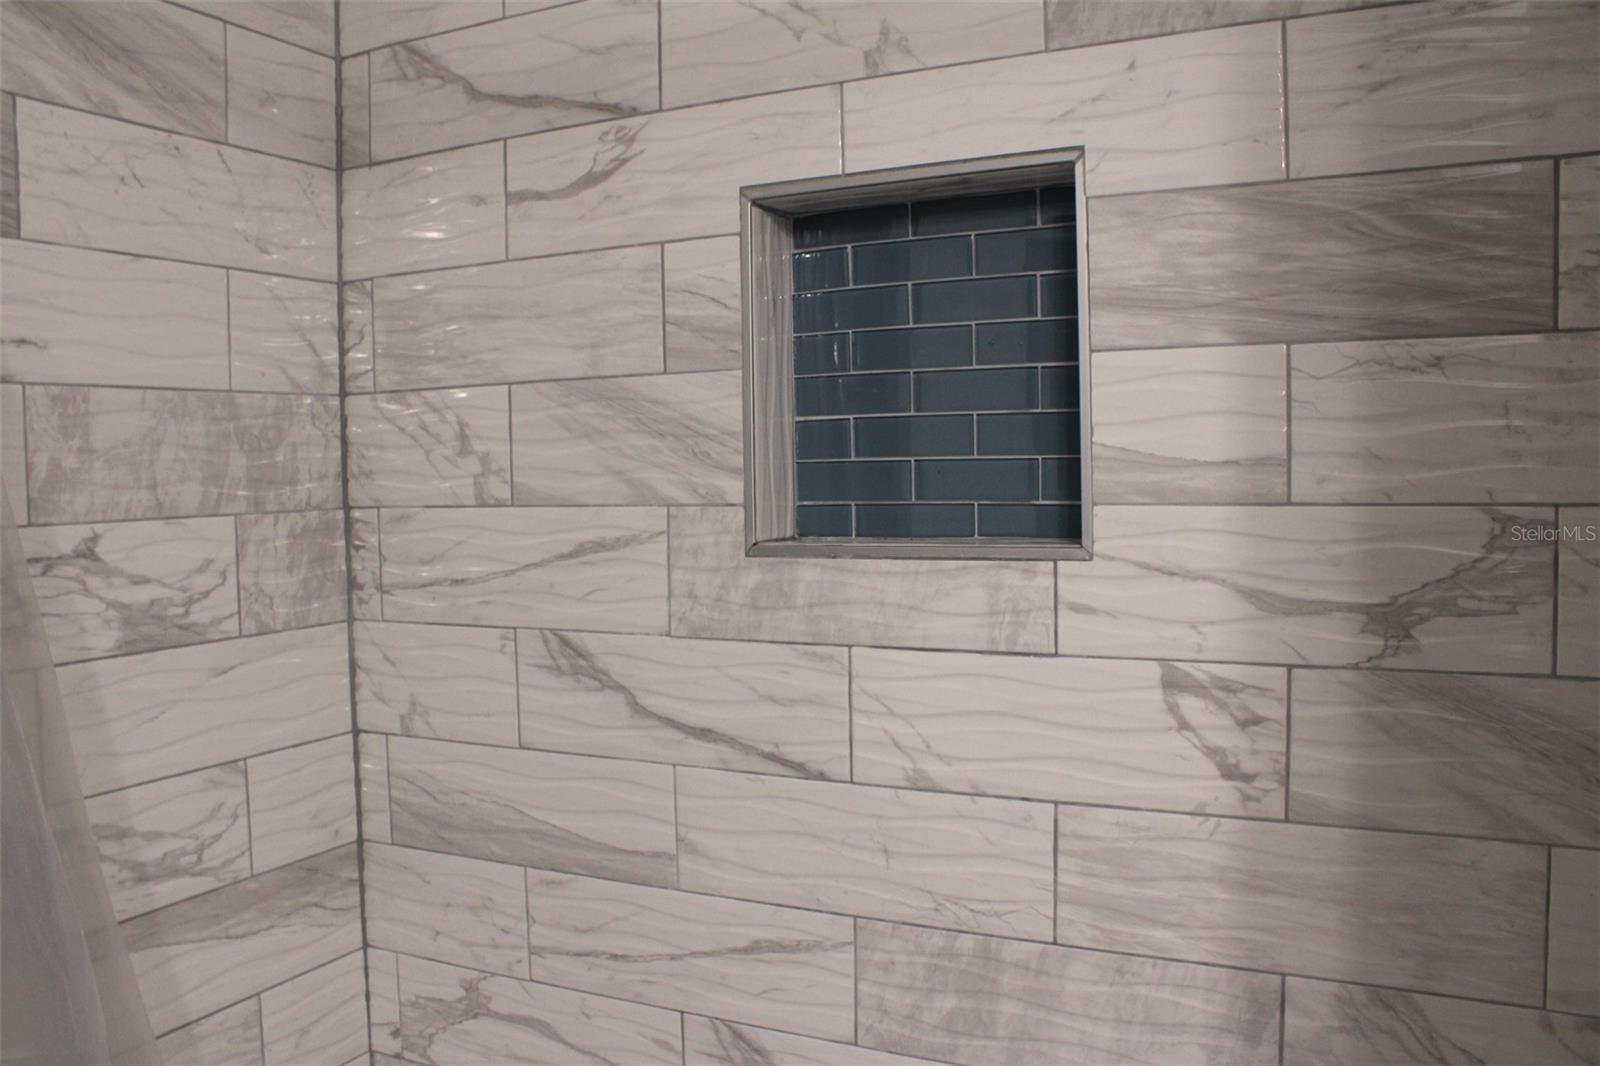 Stylish bathroom tile